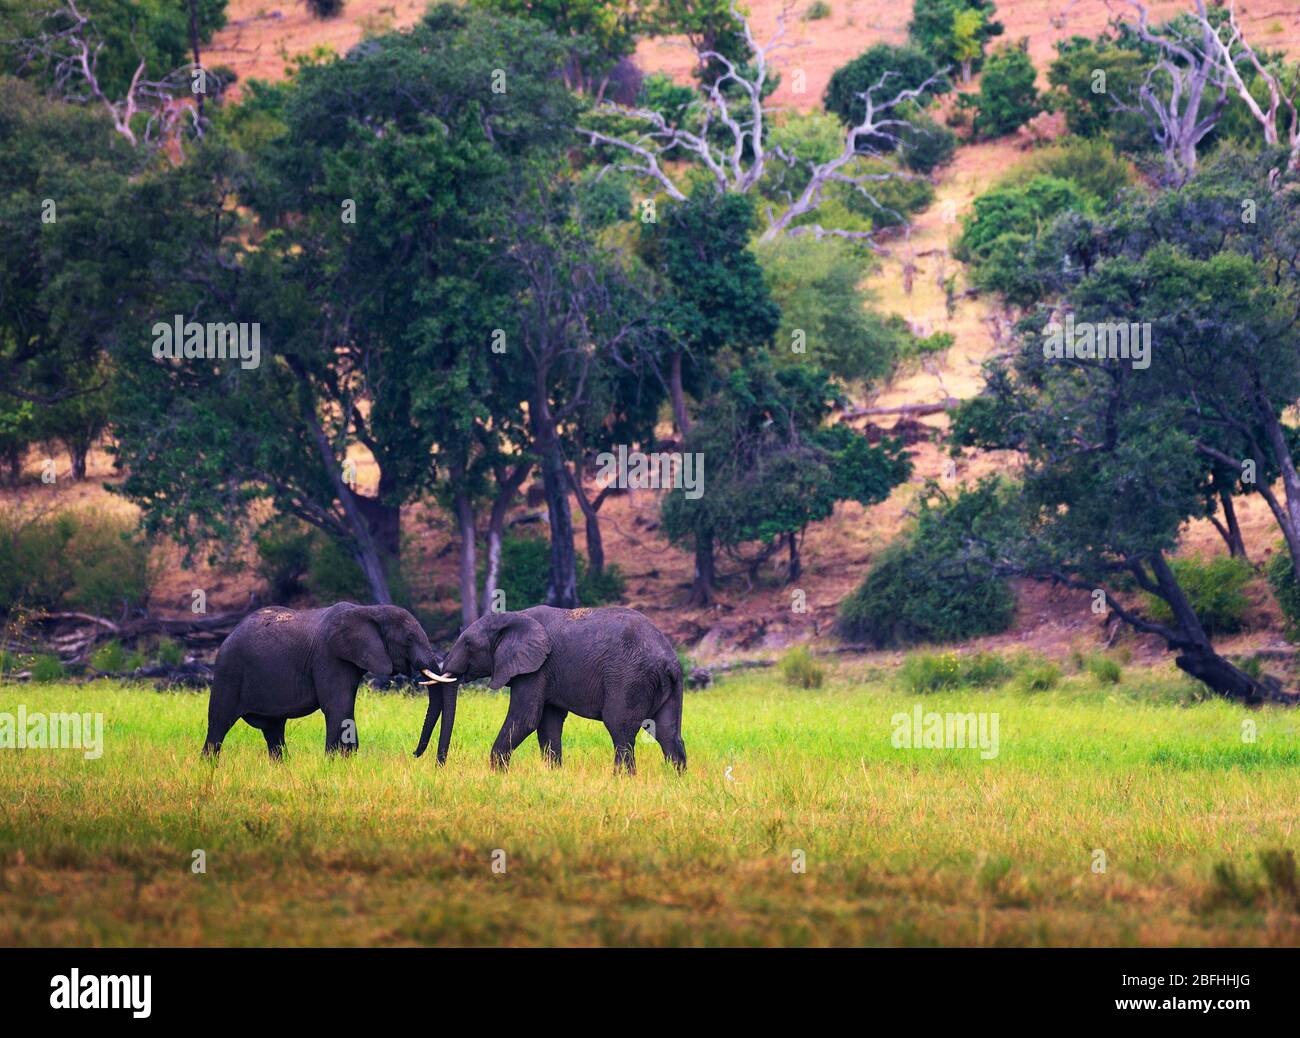 Deux grands éléphants se battent dans le parc national de Chobe, au Botswana. Banque D'Images